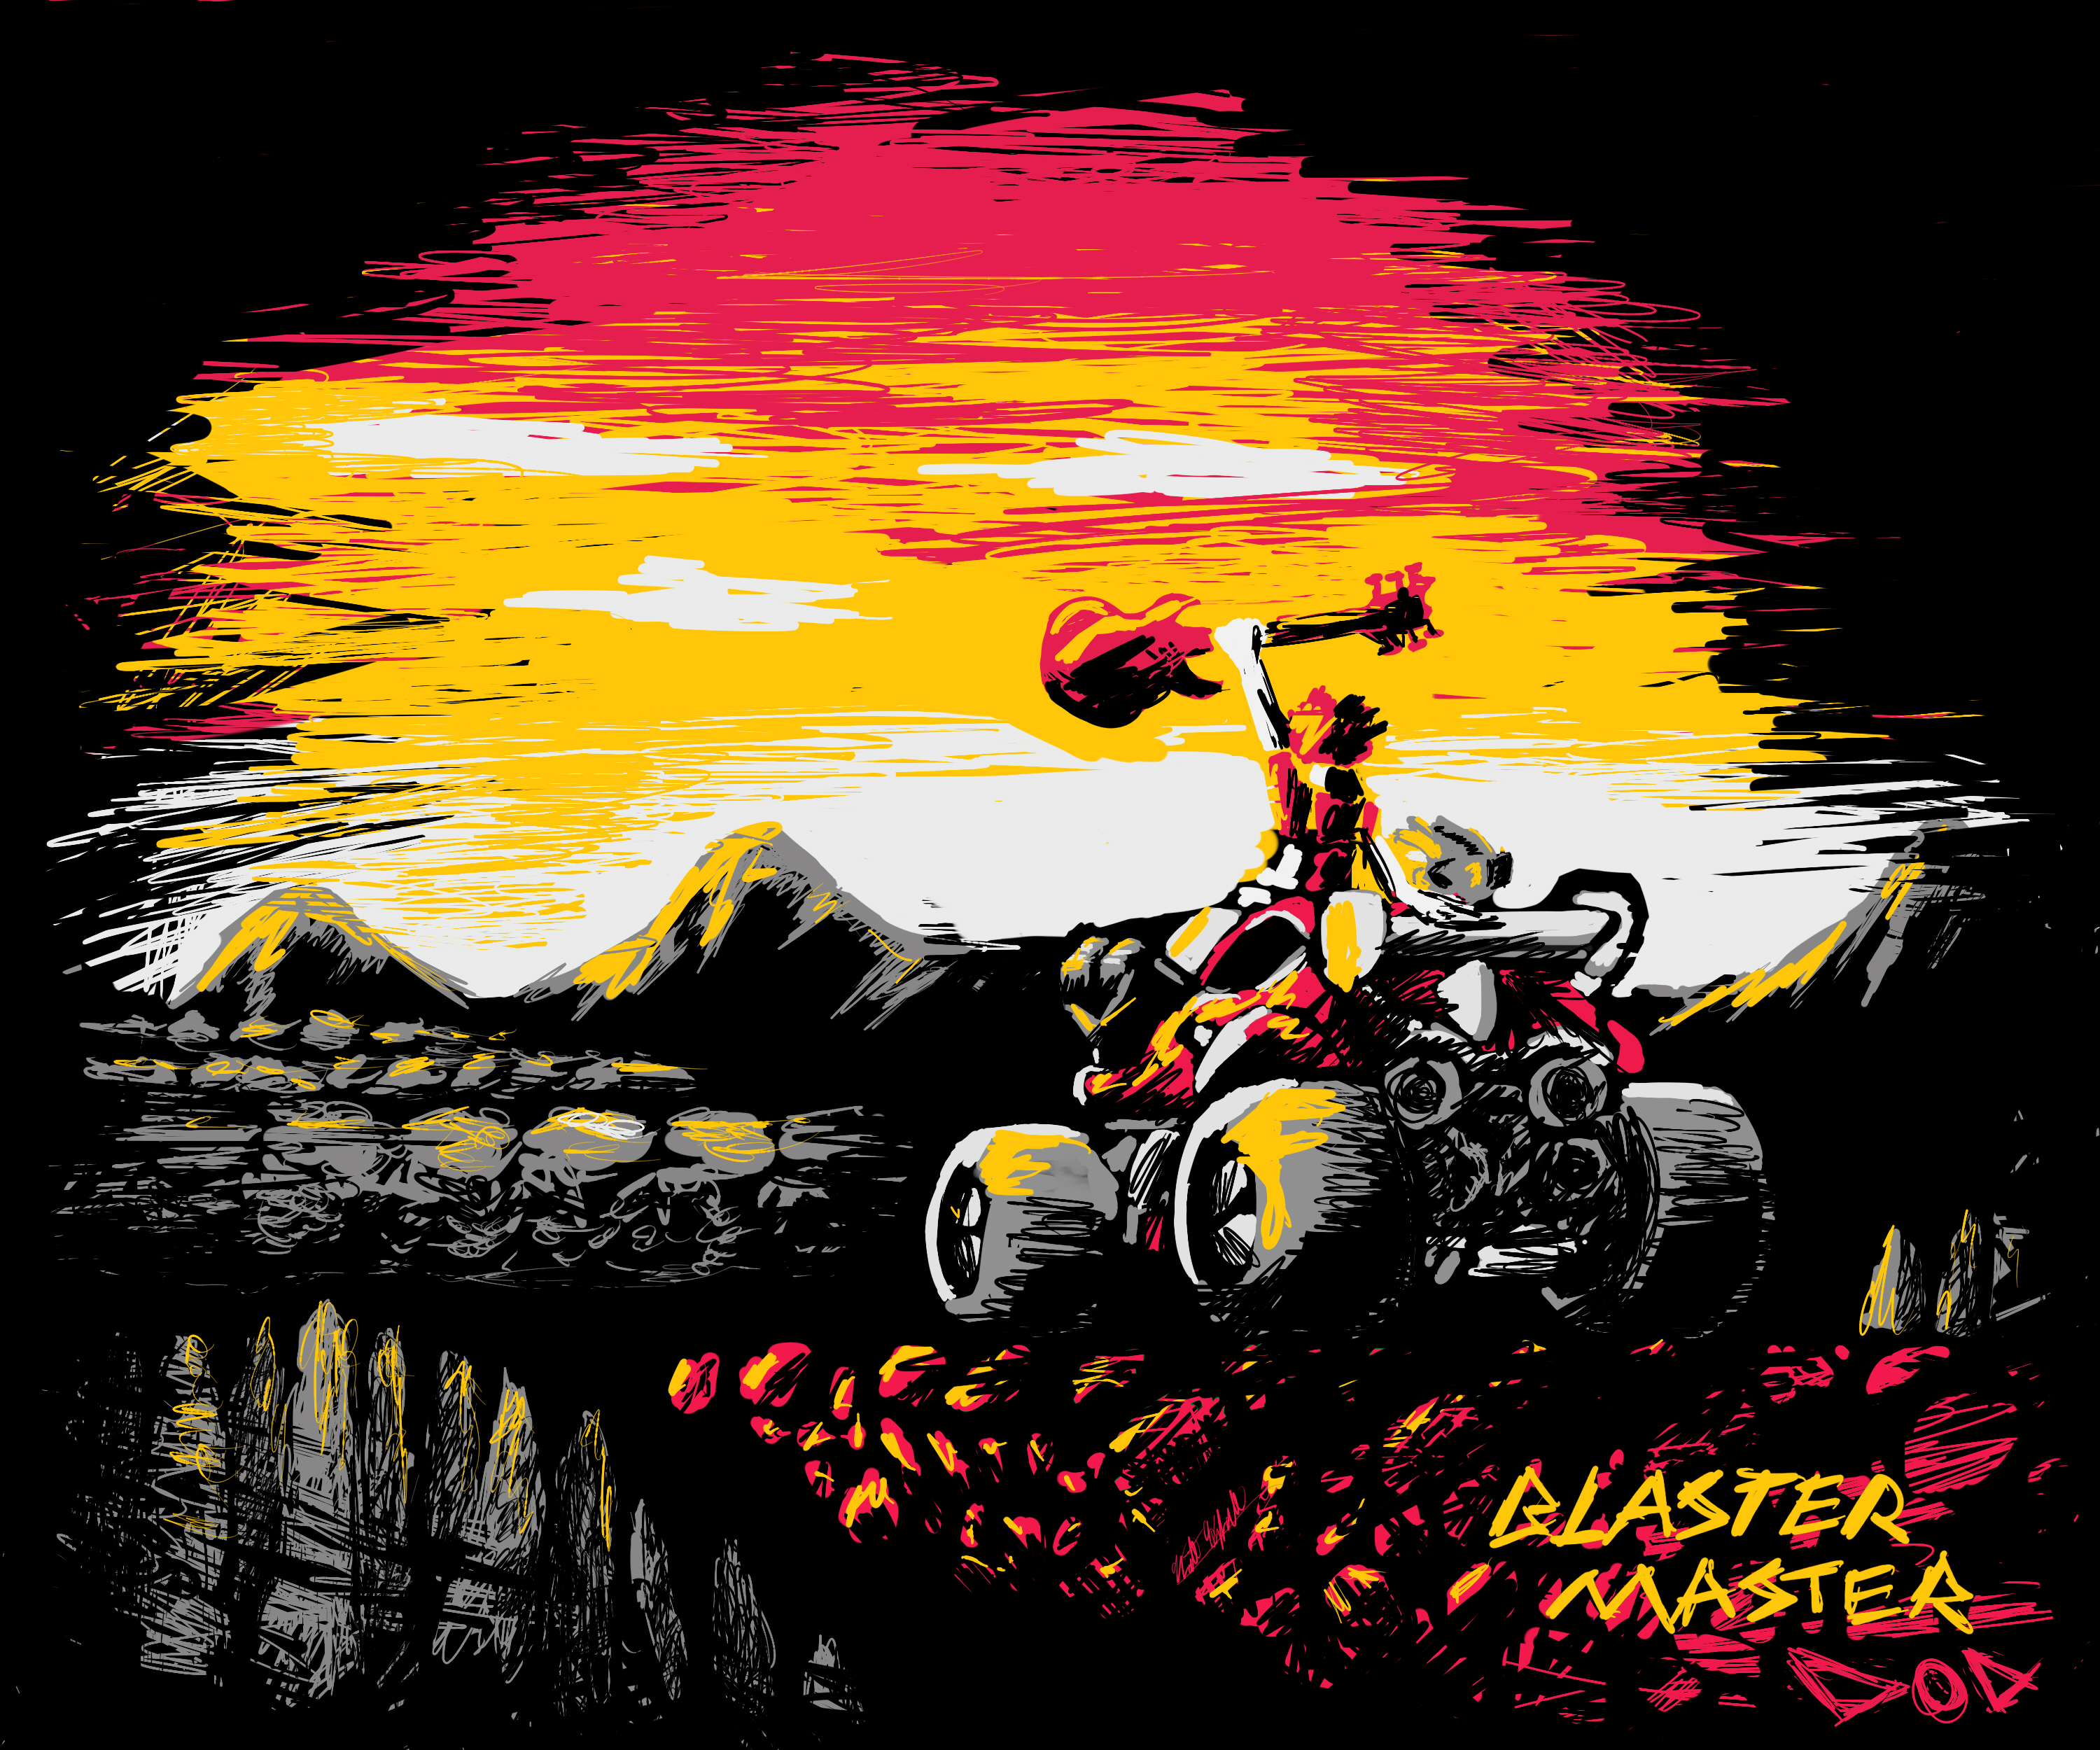 Blaster Master #20